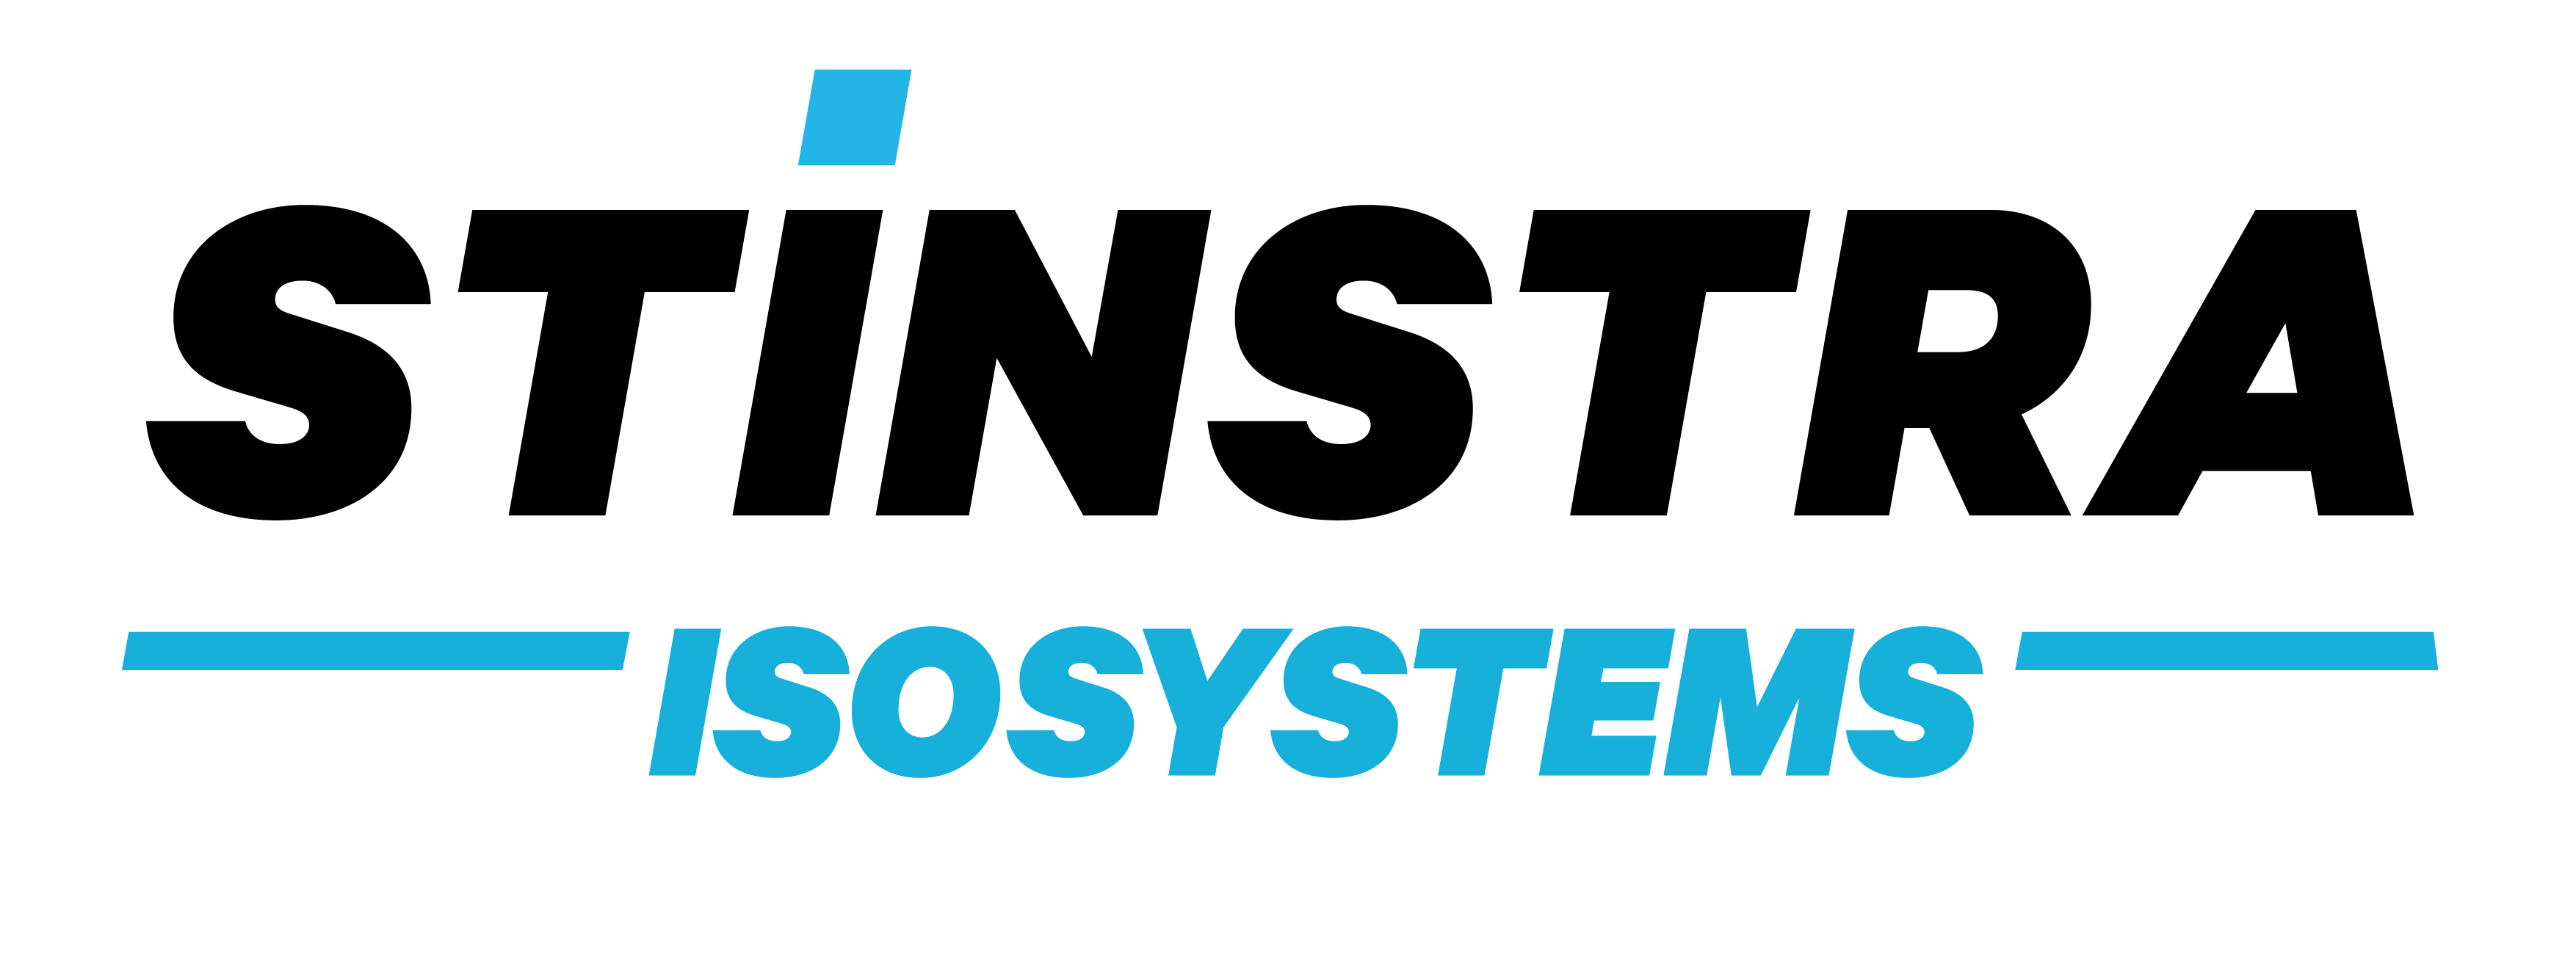 Stinstra isosystems